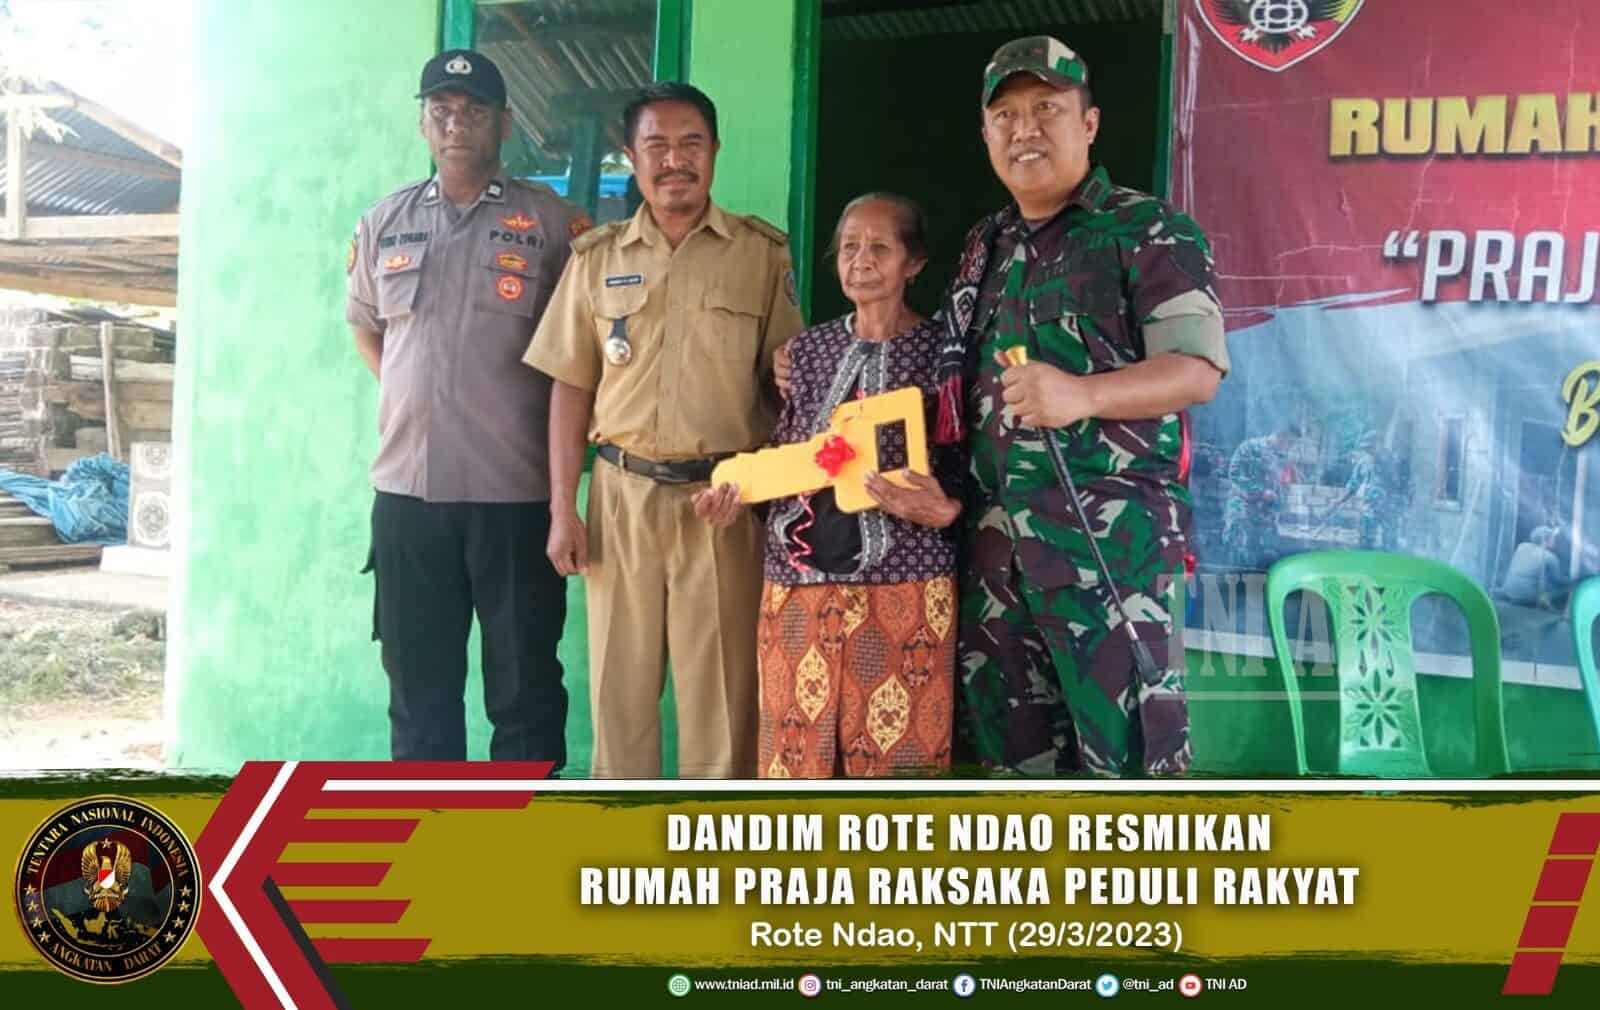 Tumbuhkan Semangat Kemanunggalan TNI-Rakyat, Dandim Rote Ndao Resmikan Rumah Praja Raksaka Peduli Rakyat